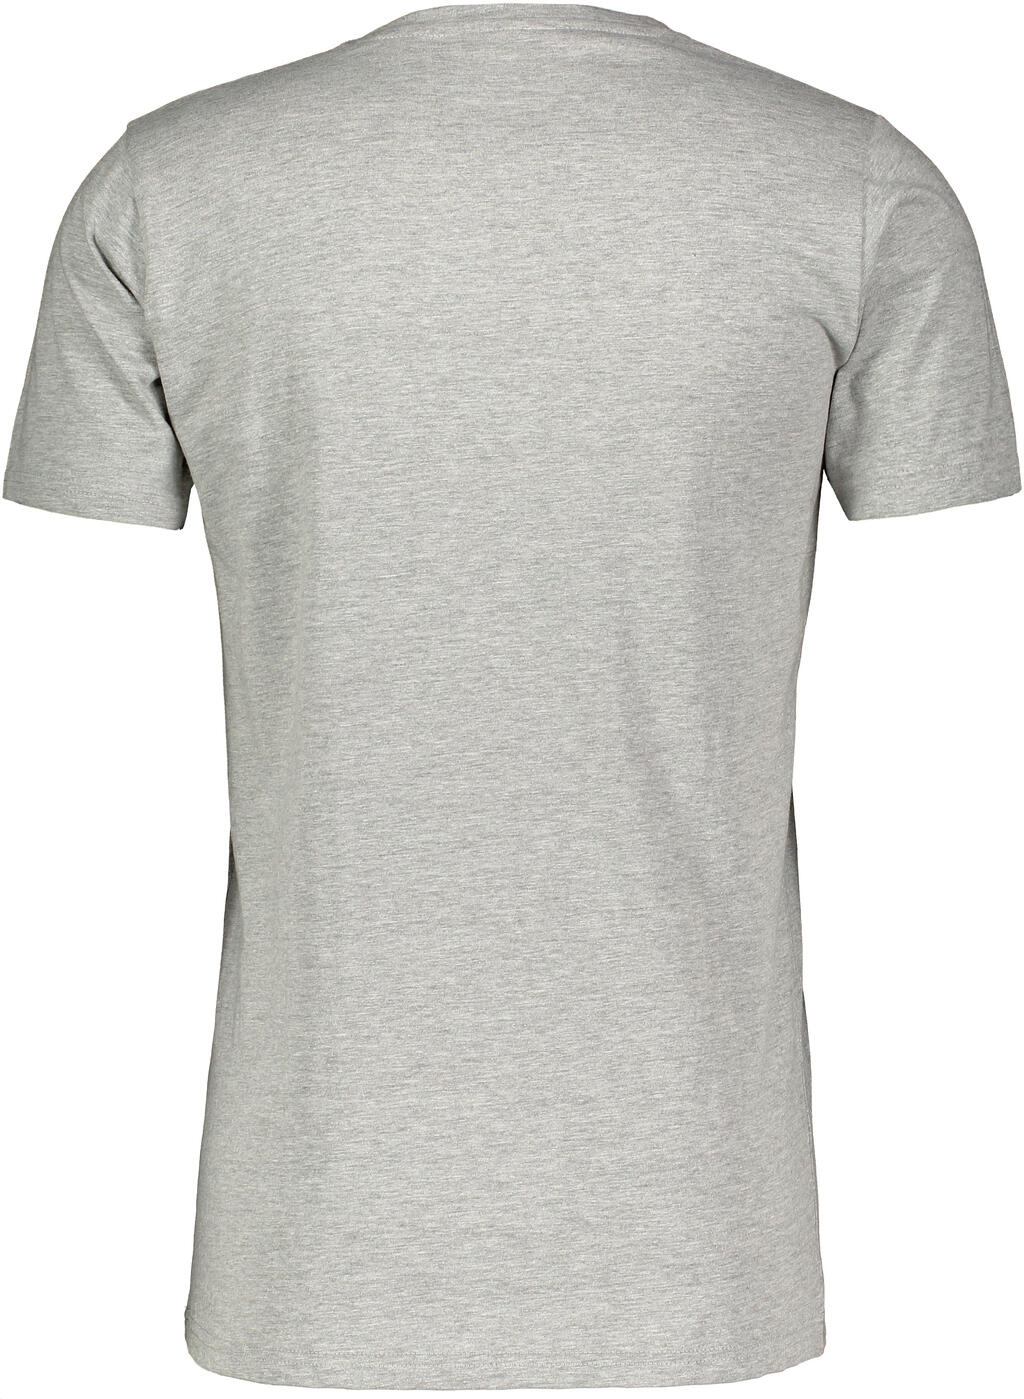 Niklas Basic Tee Light Grey Melange XL Basic cotton T-shirt - Urban ...